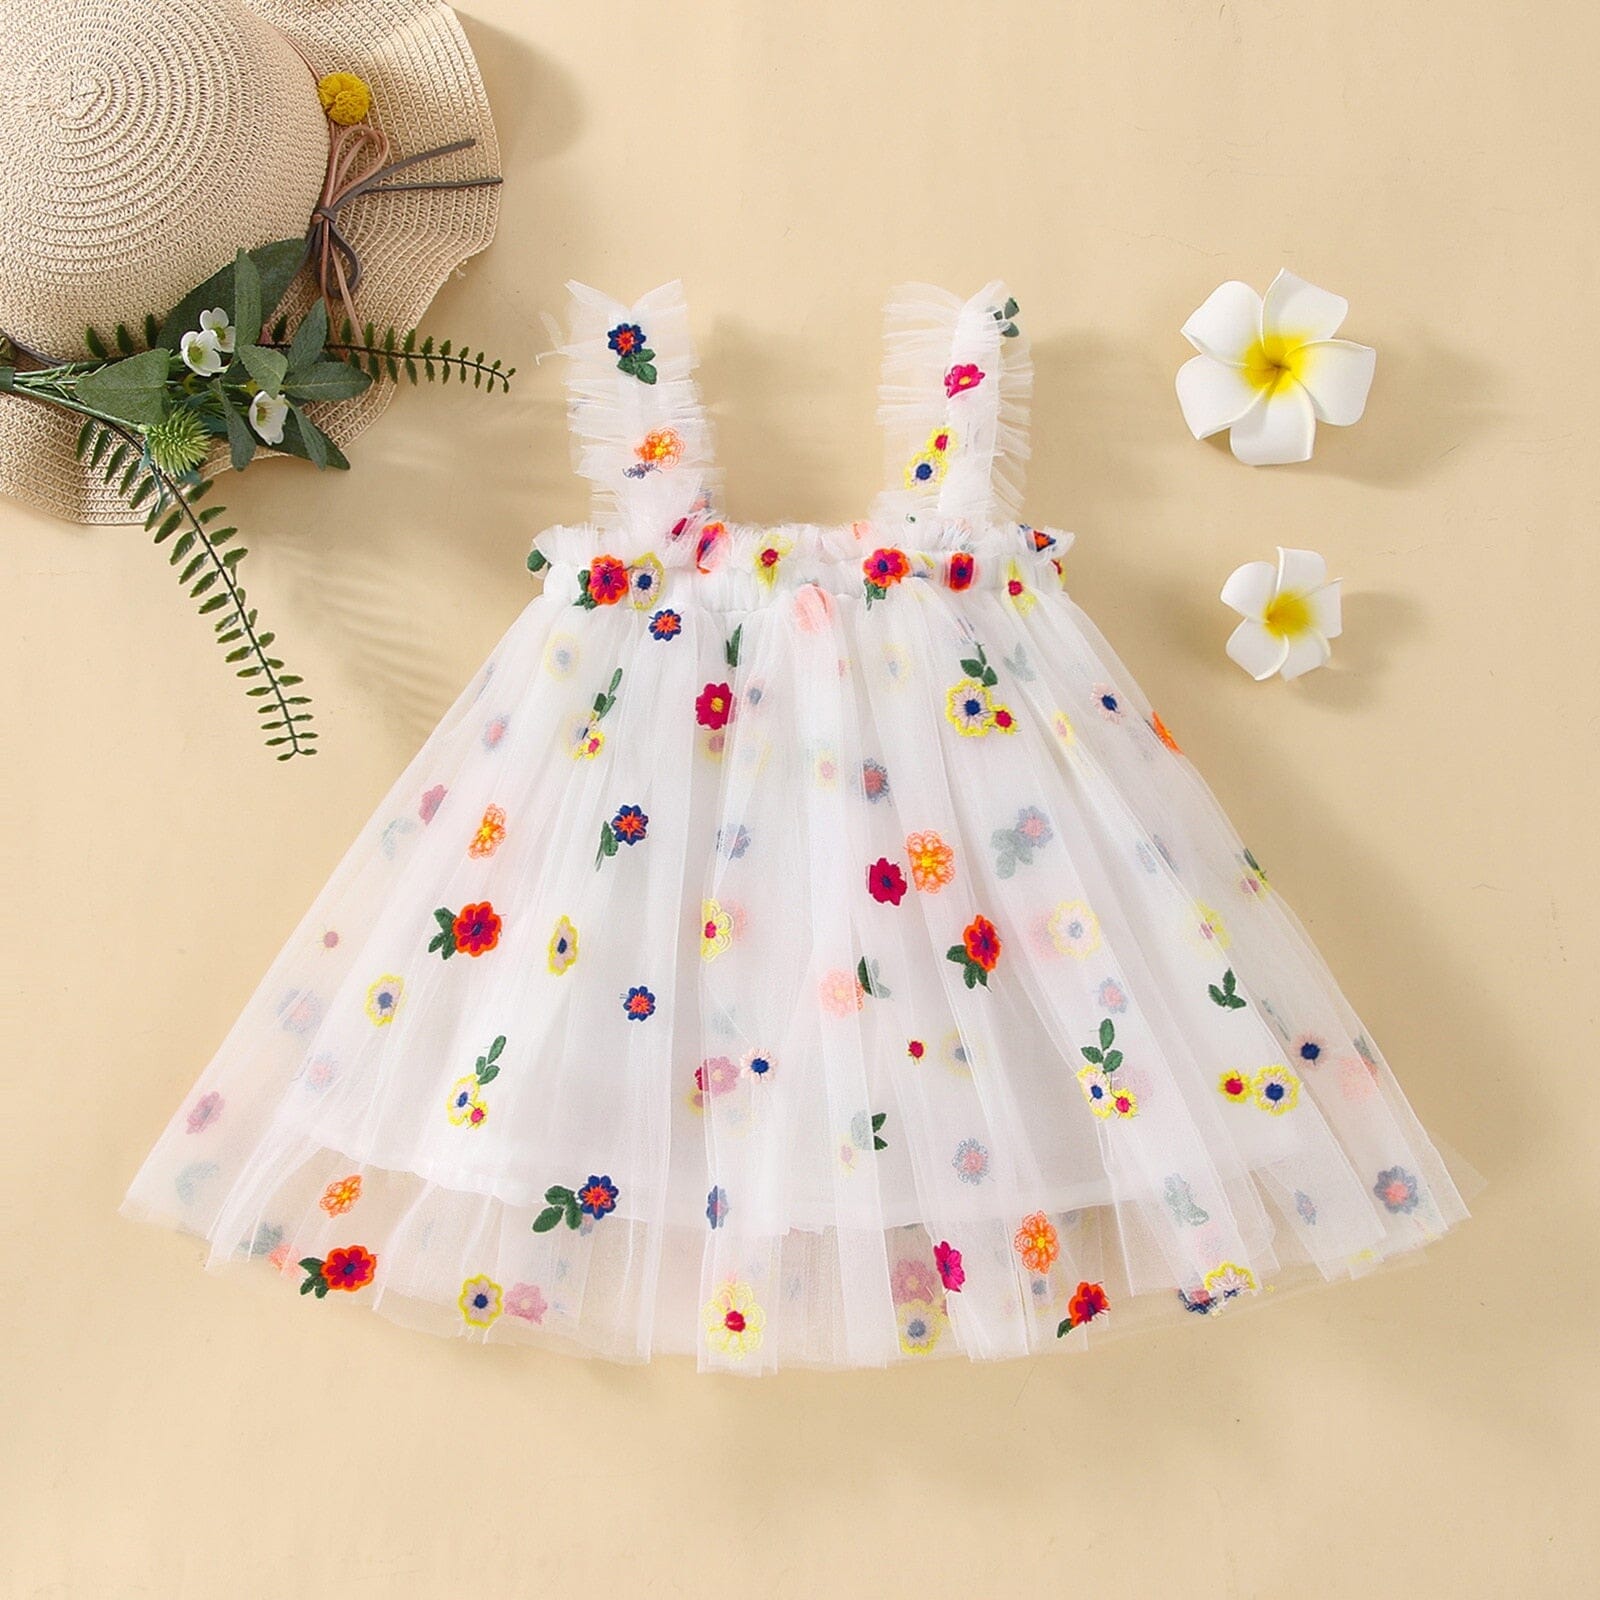 Vestido Infantil Bordado e Tule Loja Click Certo Florzinhas Coloridas 6-12 Meses 